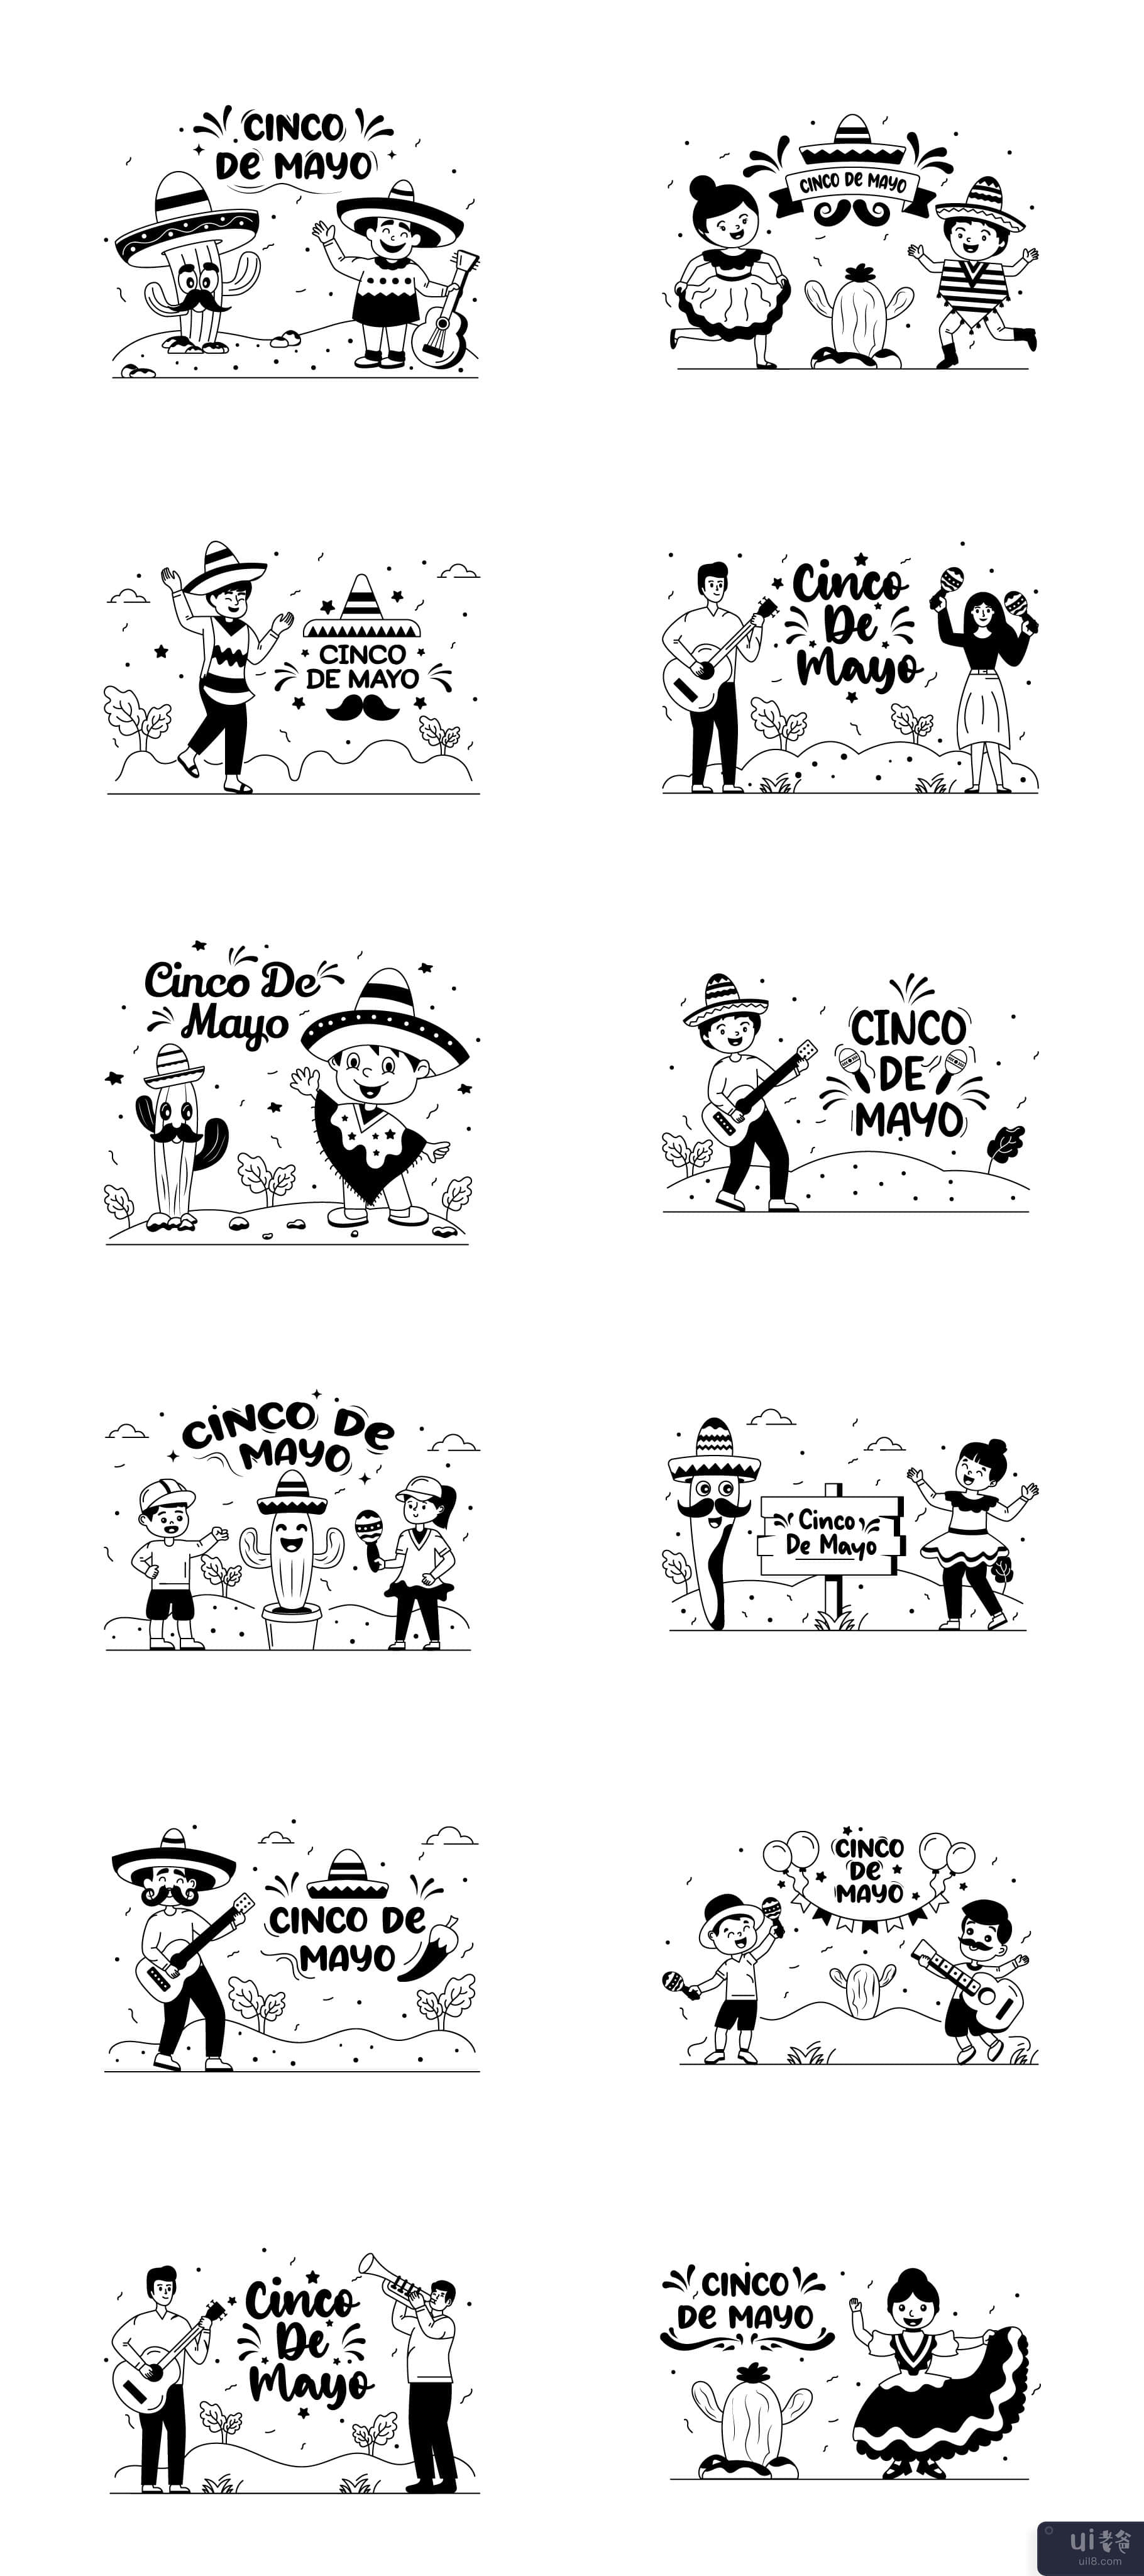 25 个五月五日节插图(25 Cinco de Mayo Illustrations)插图1